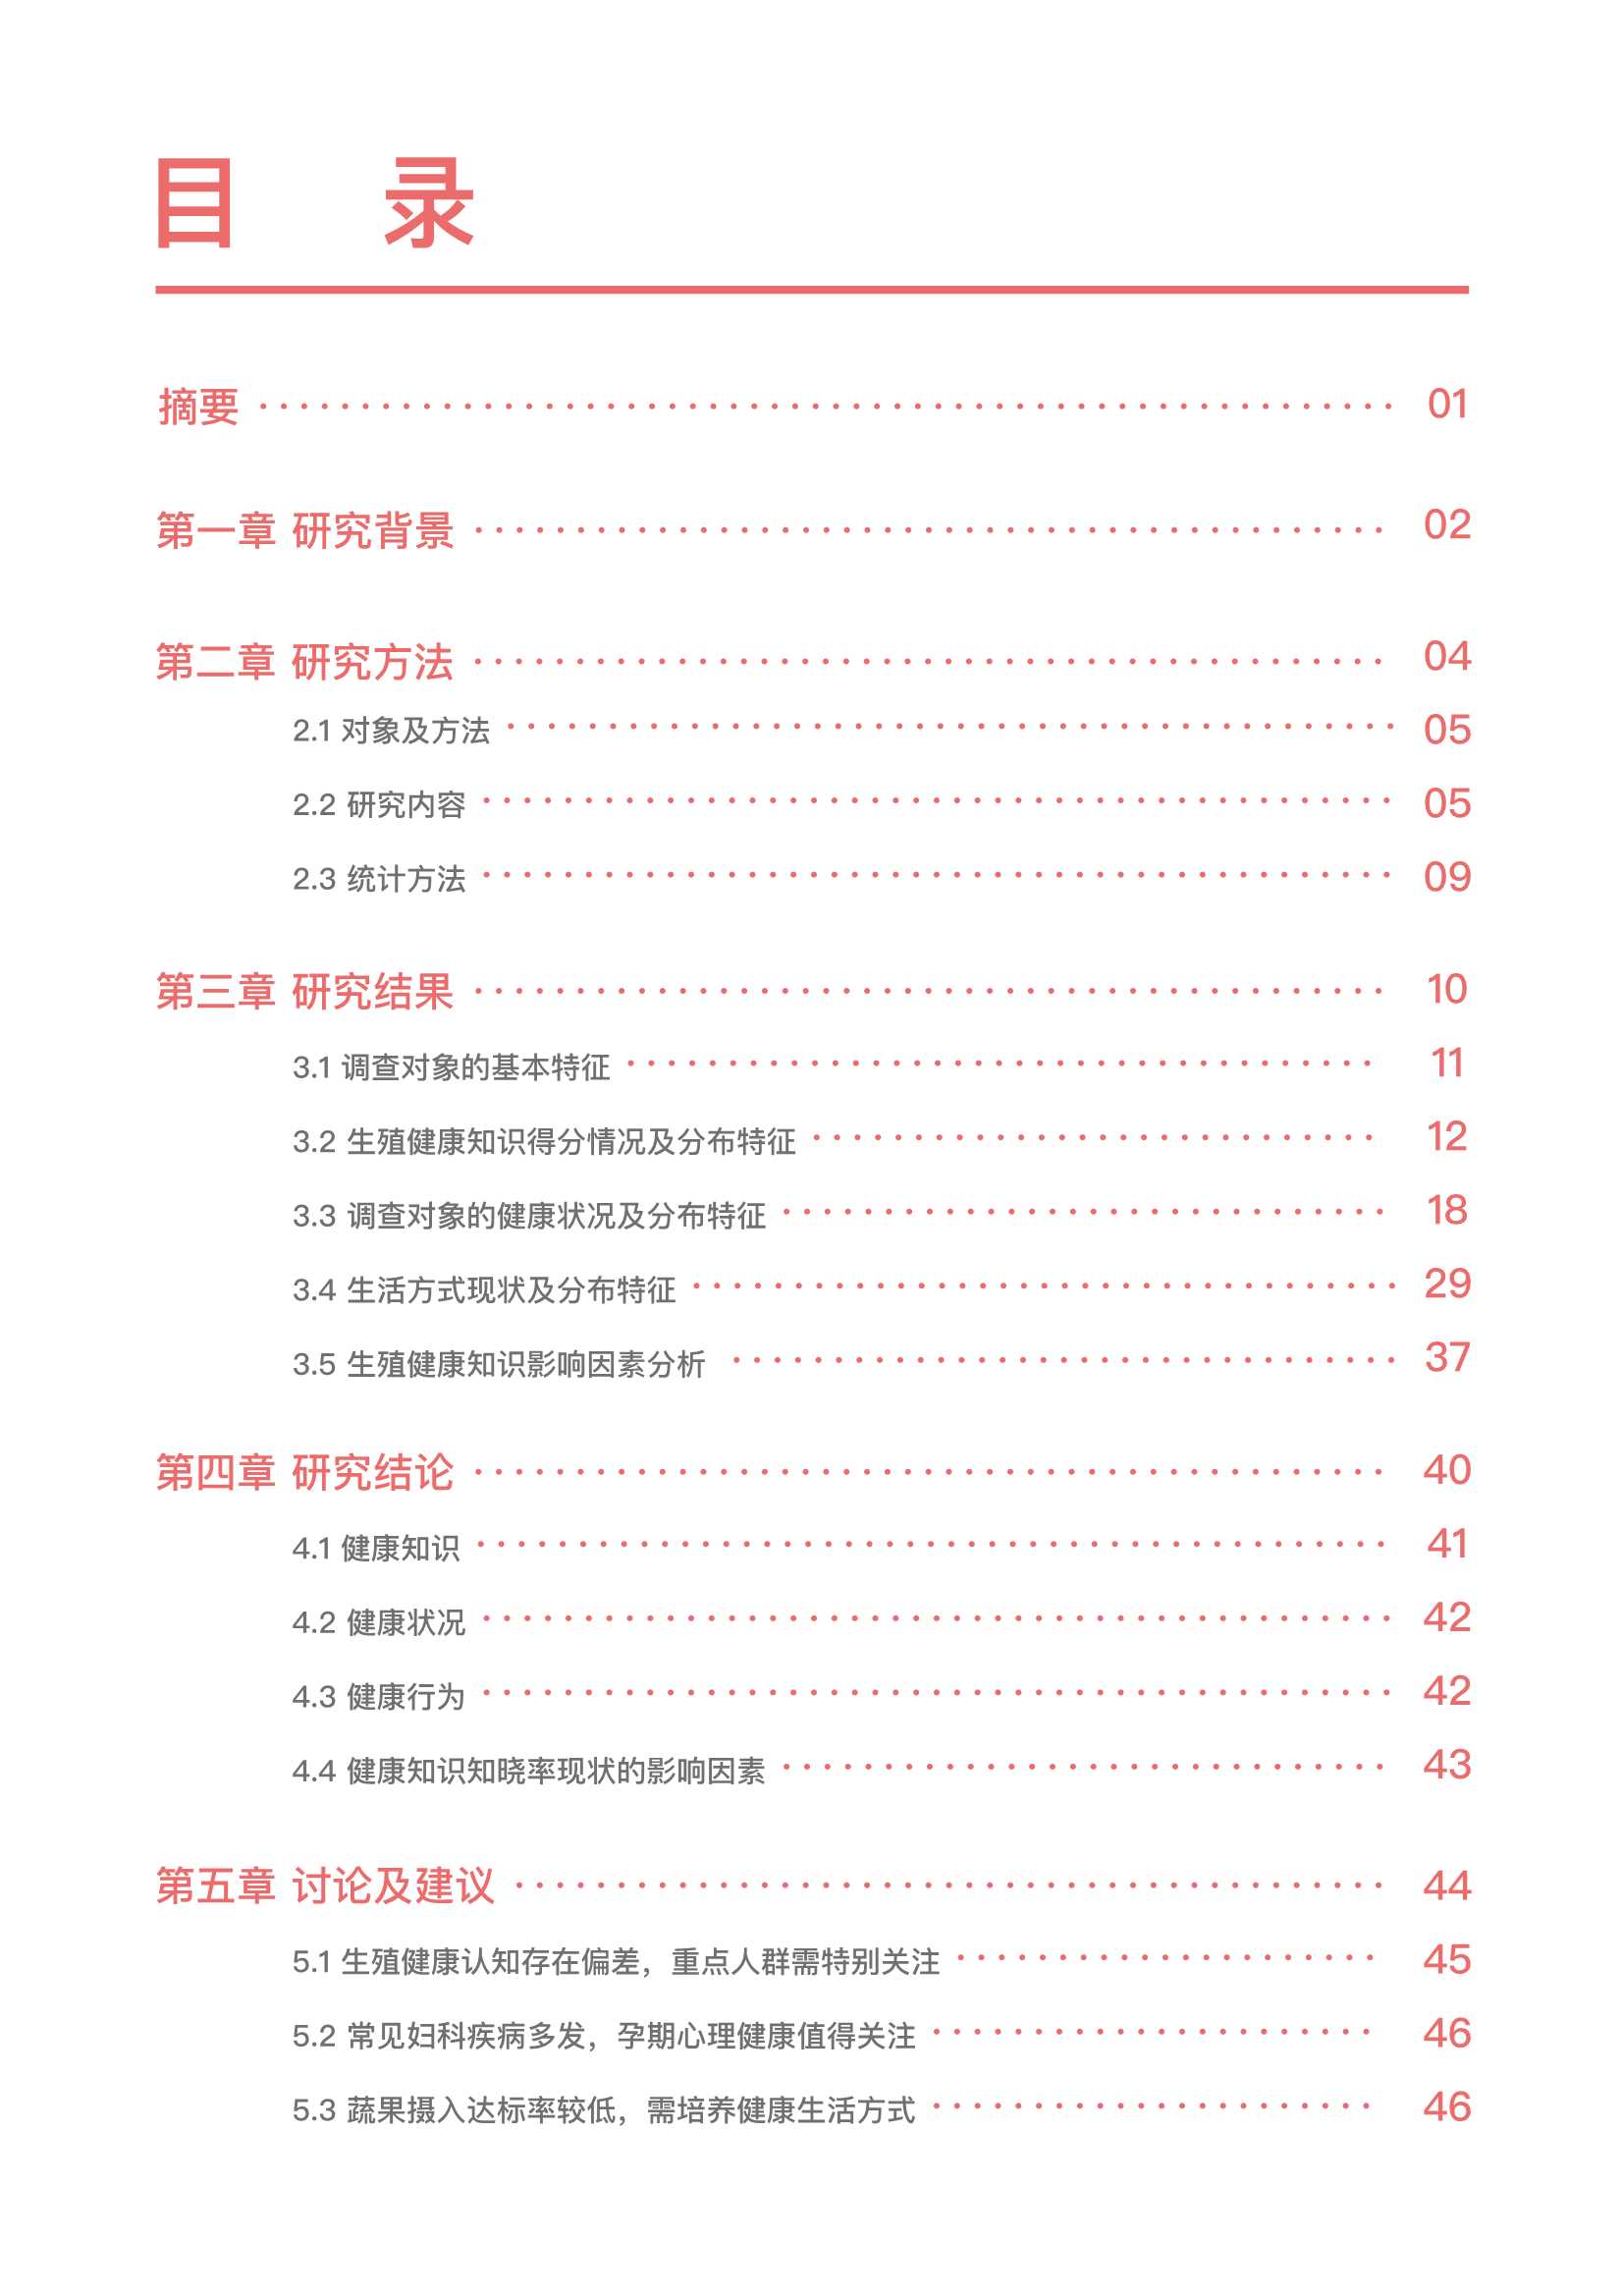 八点健闻-2022年中国育龄女性生殖健康研究报告-2022.03-52页